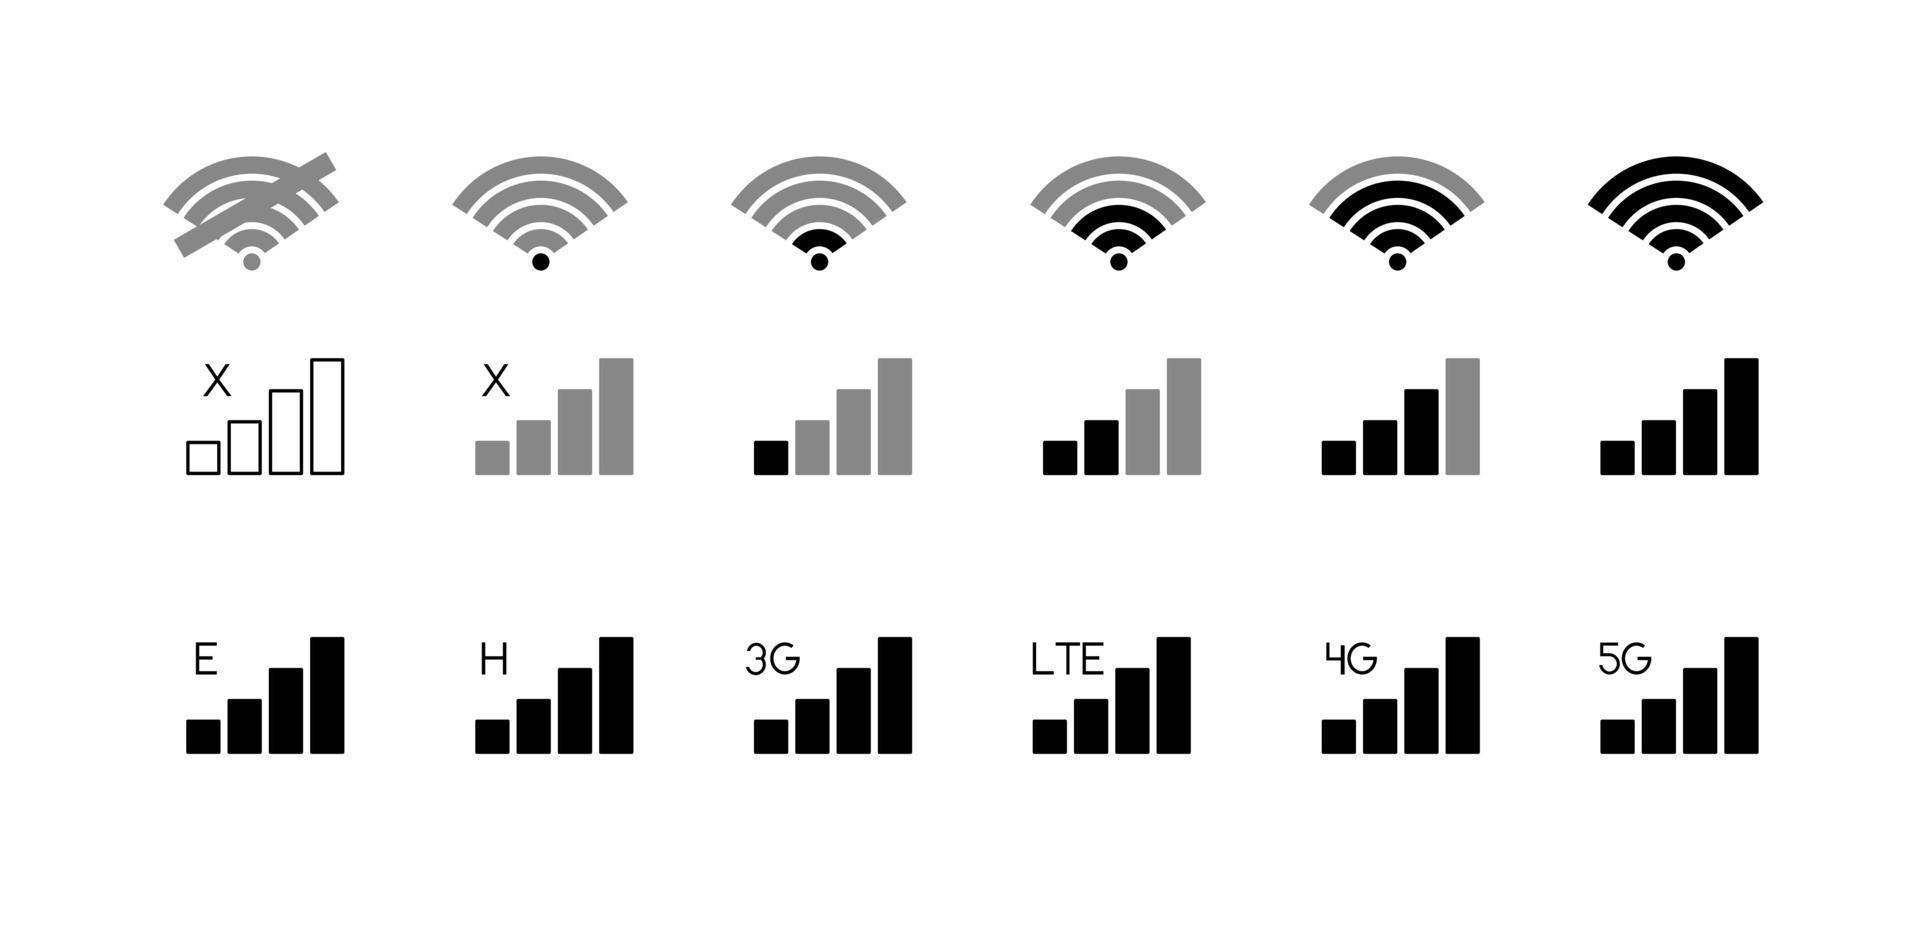 ikoner för mobiltelefonanslutningsnivå. ingen signal, dålig, lte, 3g, 4g och 5g nätverksstatusikonuppsättning isolerad på vit bakgrund vektor